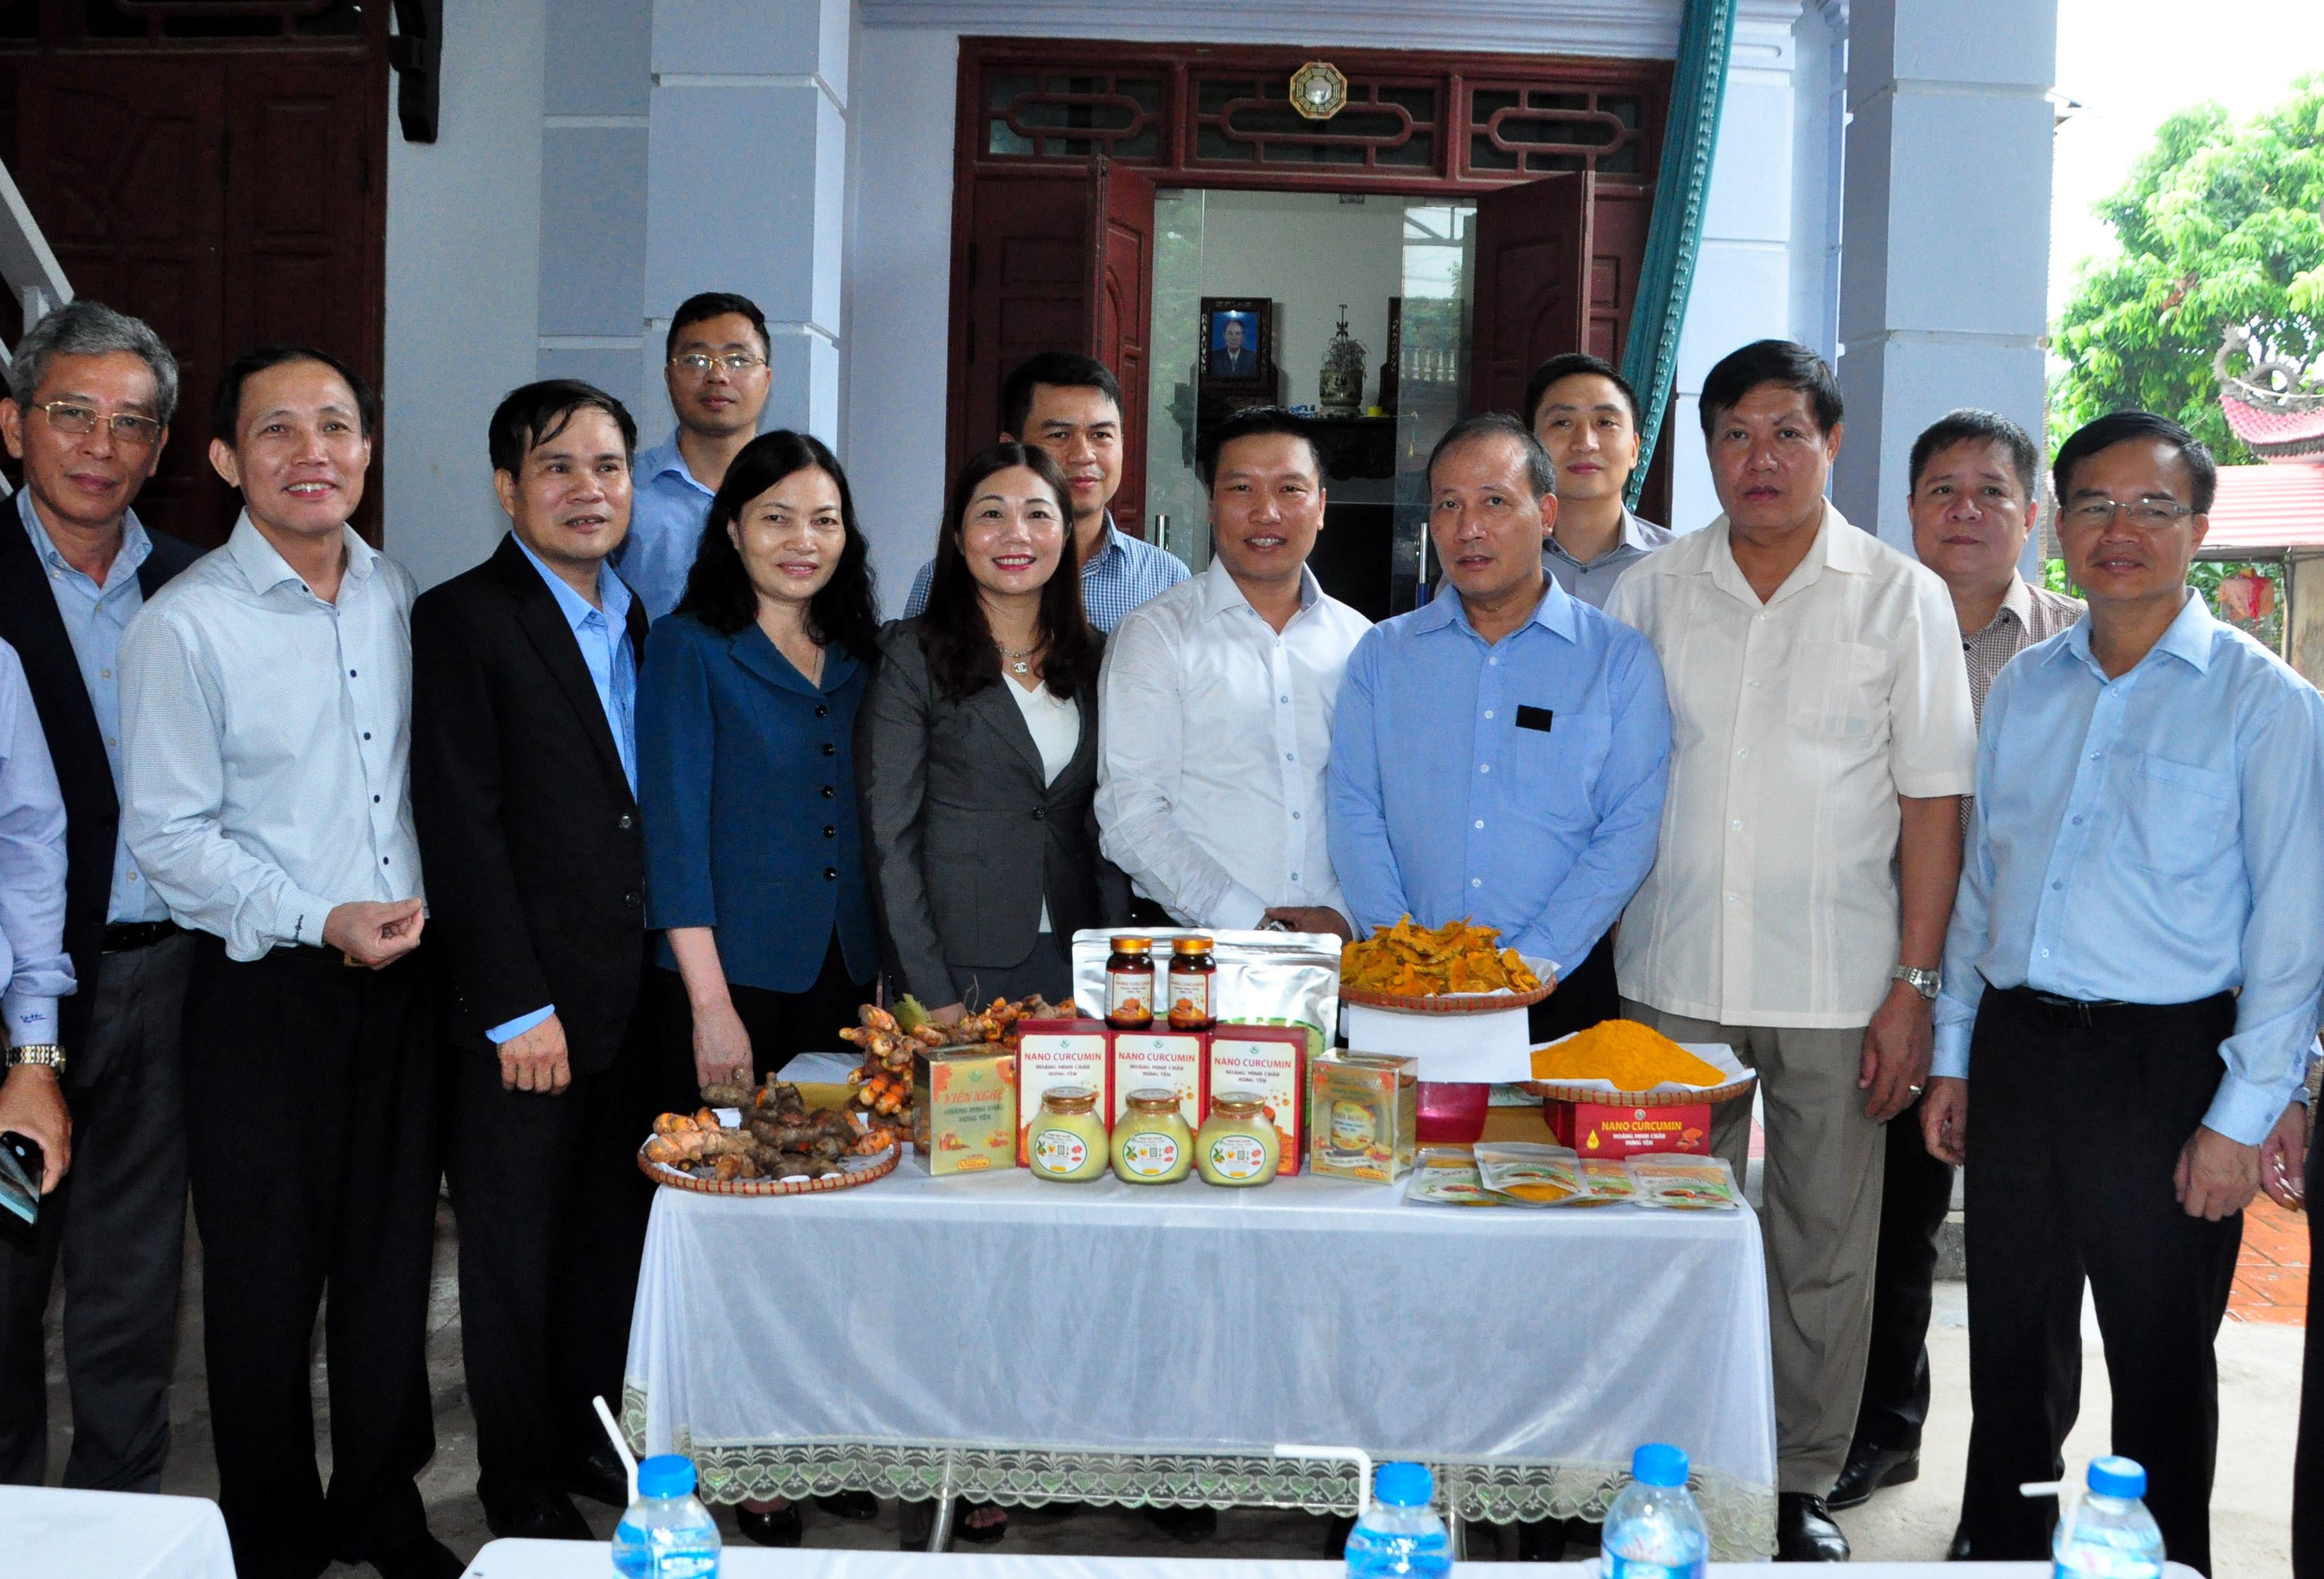 Công ty TNHH Hoàng Minh Châu Hưng Yên vinh dự được đón tiếp đồng chí Cao Quốc Hưng, Thứ trưởng Bộ Công thương về thăm